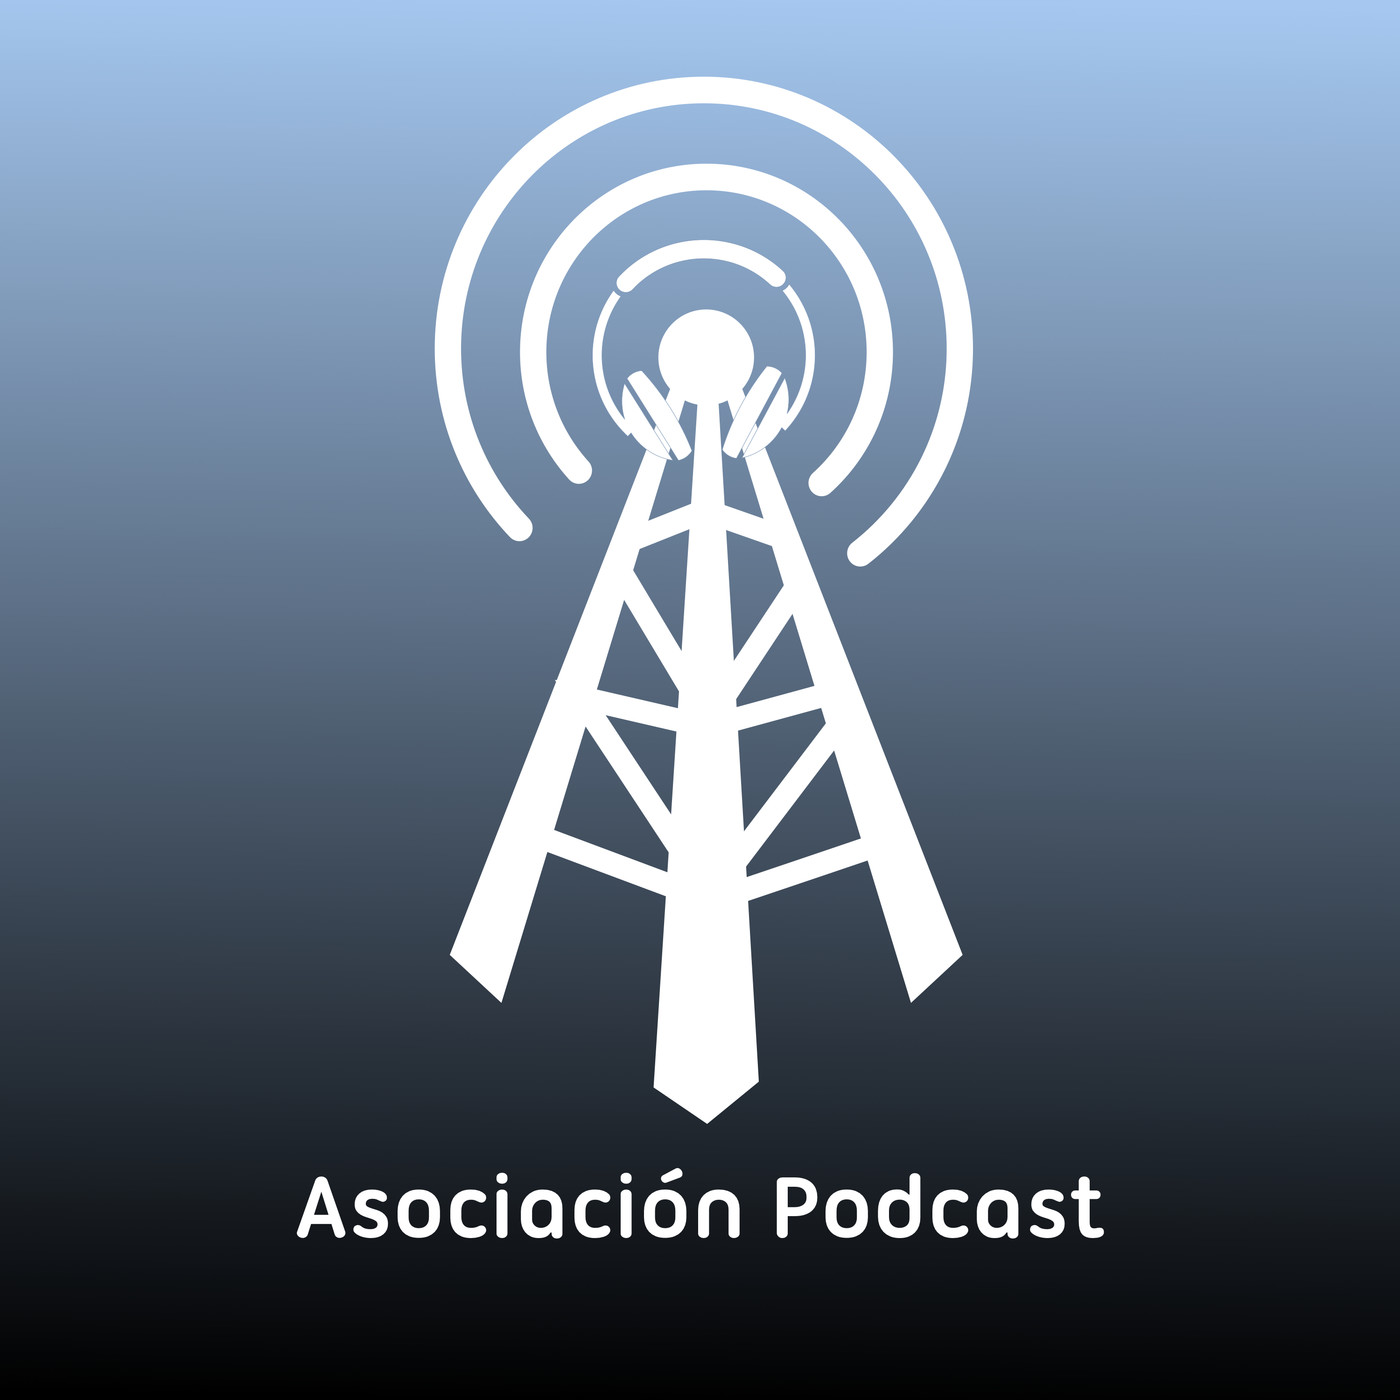 Asociación Podcast